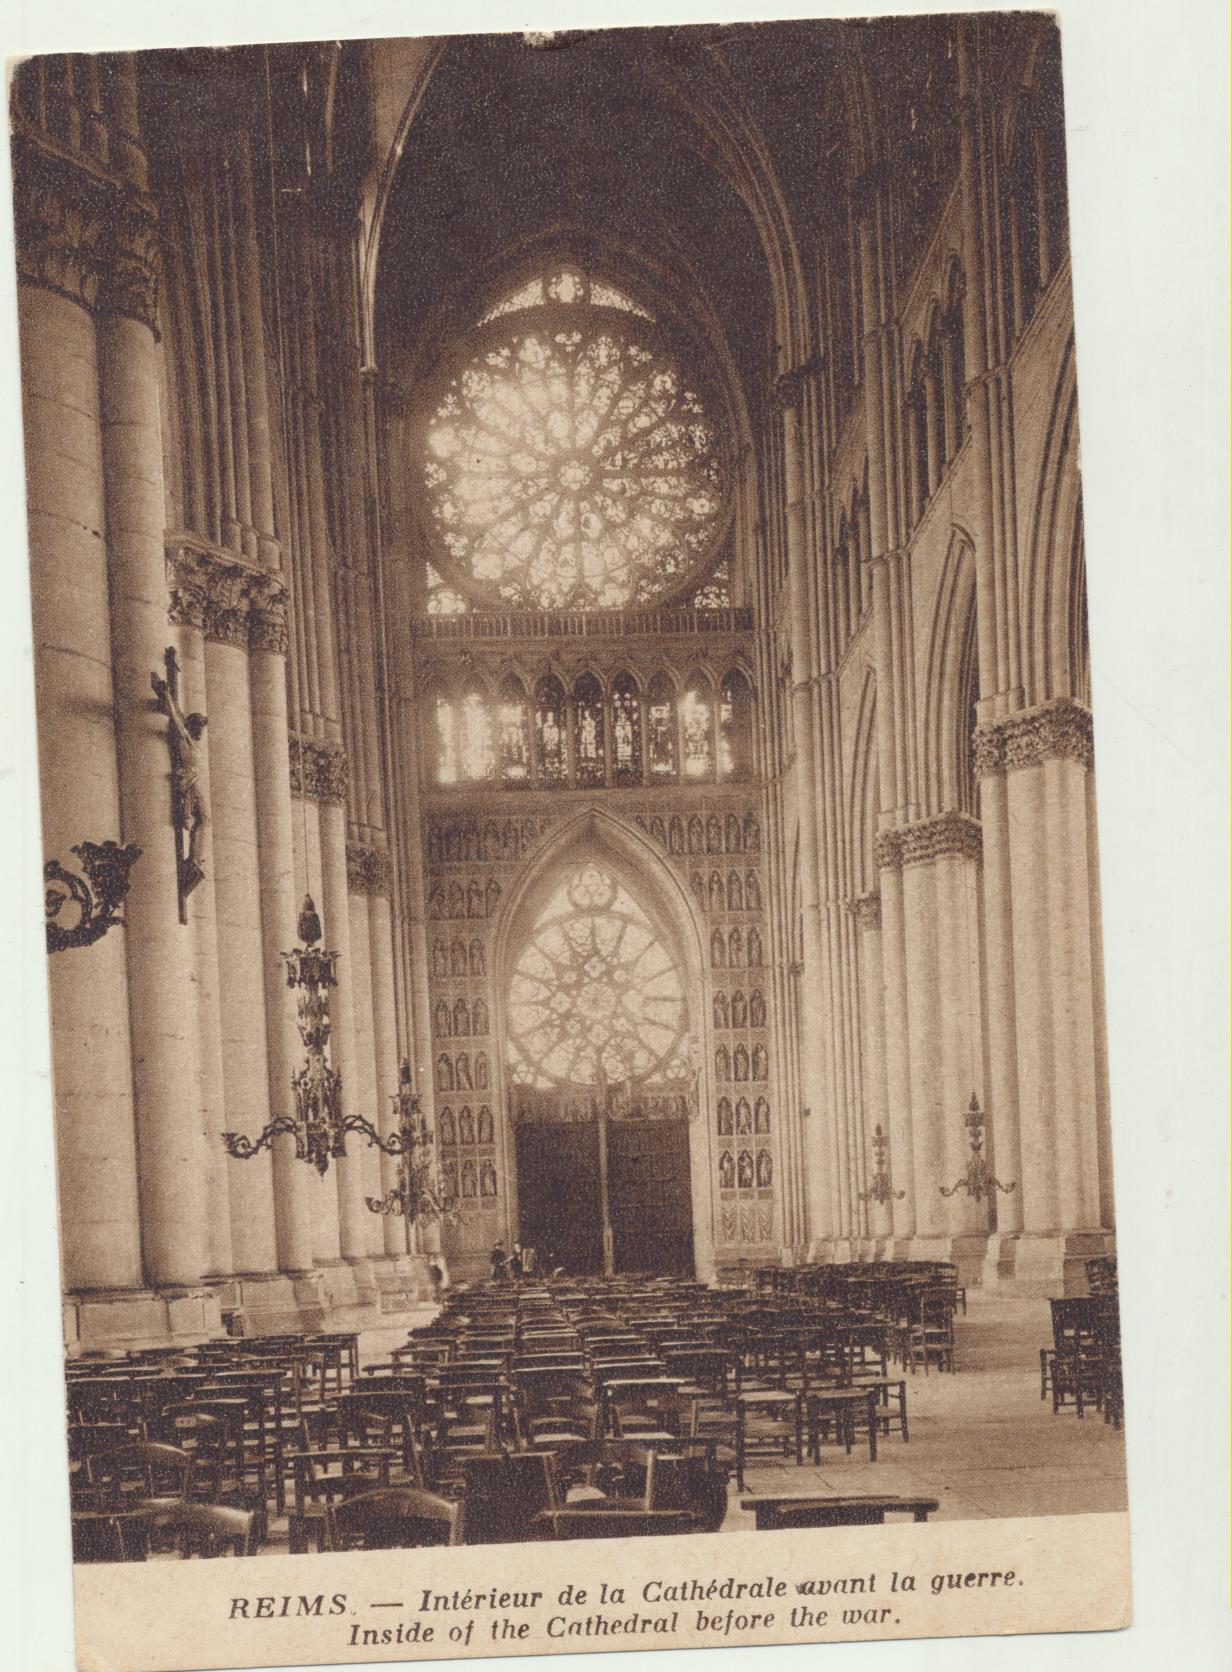 Reims. Interieur de la Cathedrale avant la guerre